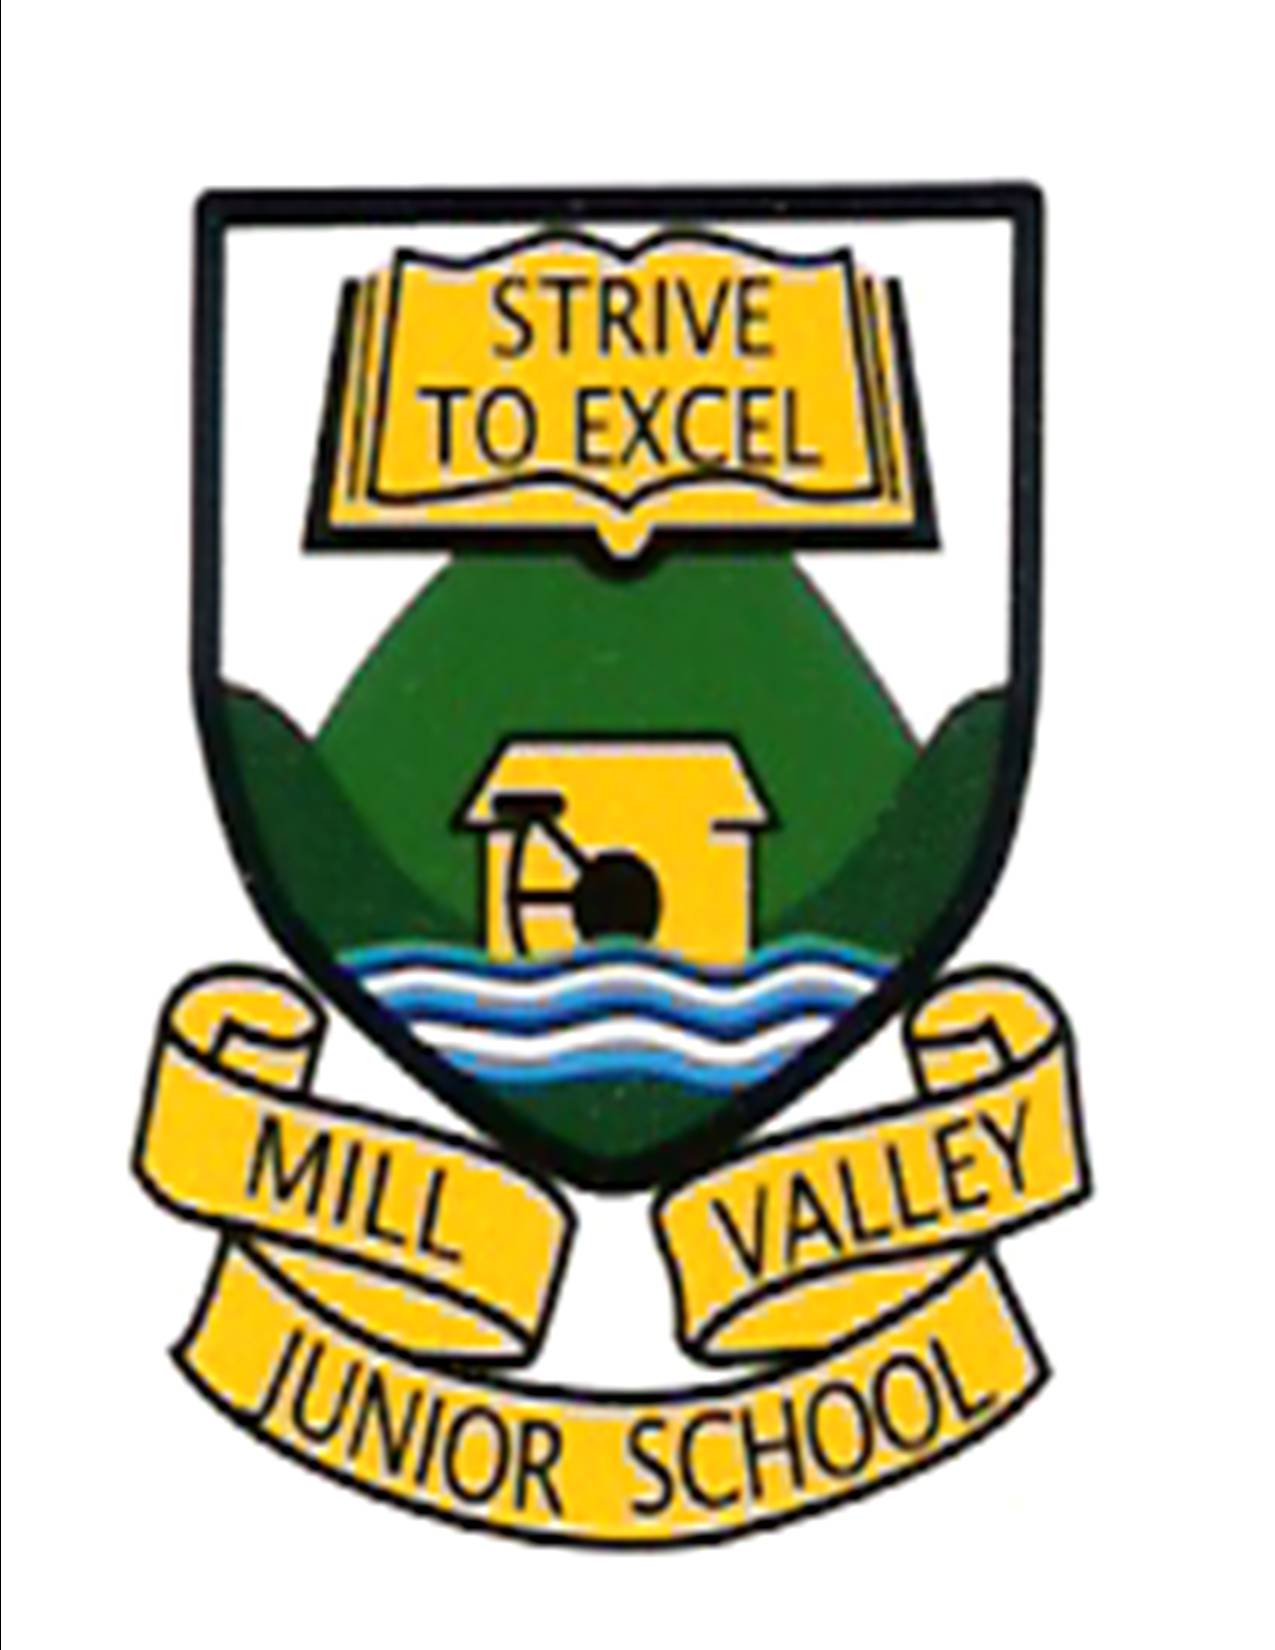 Mill Valley Junior School